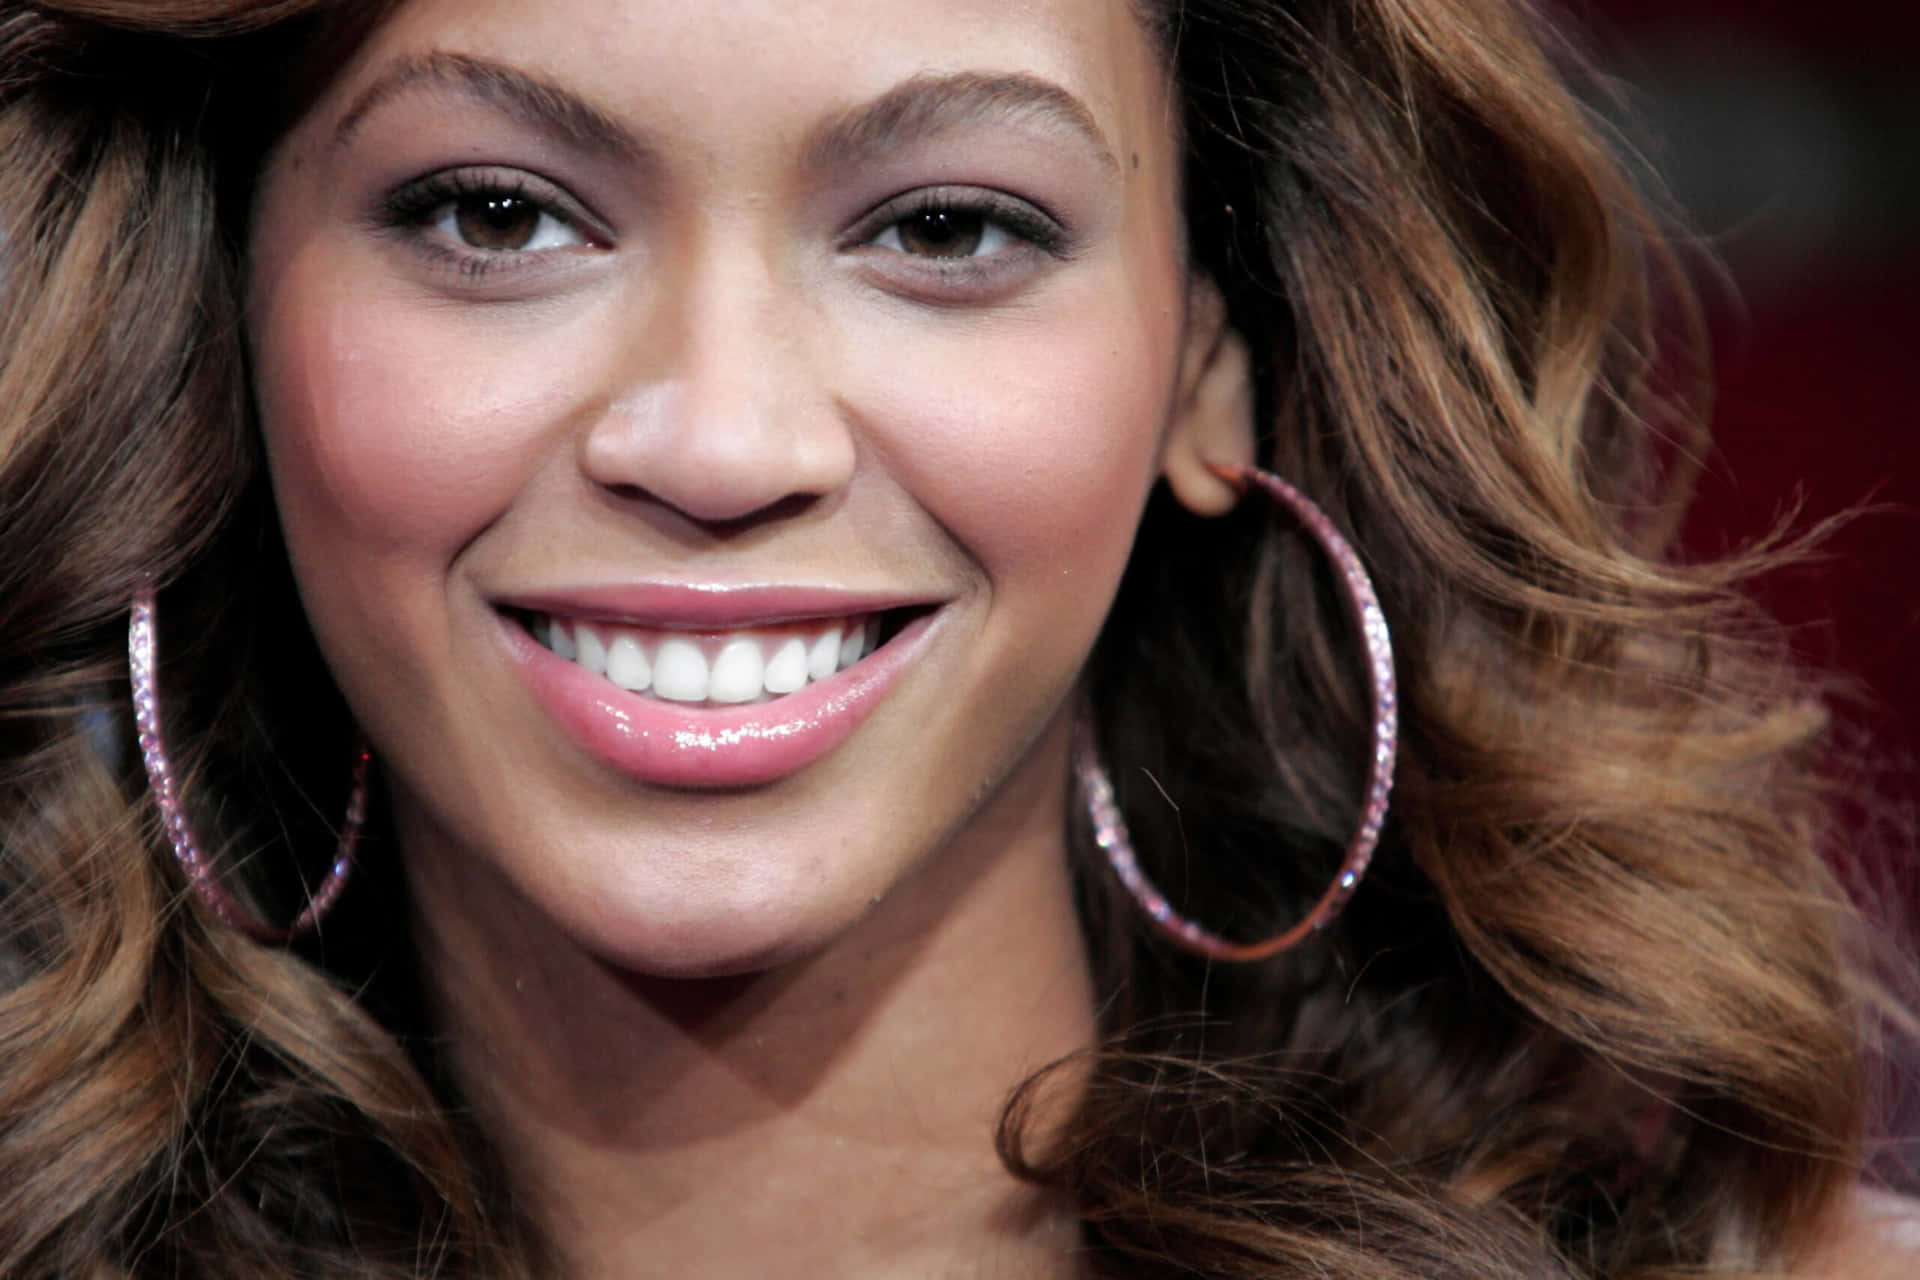 Beyonce Hoop Earrings As She Smile Picture